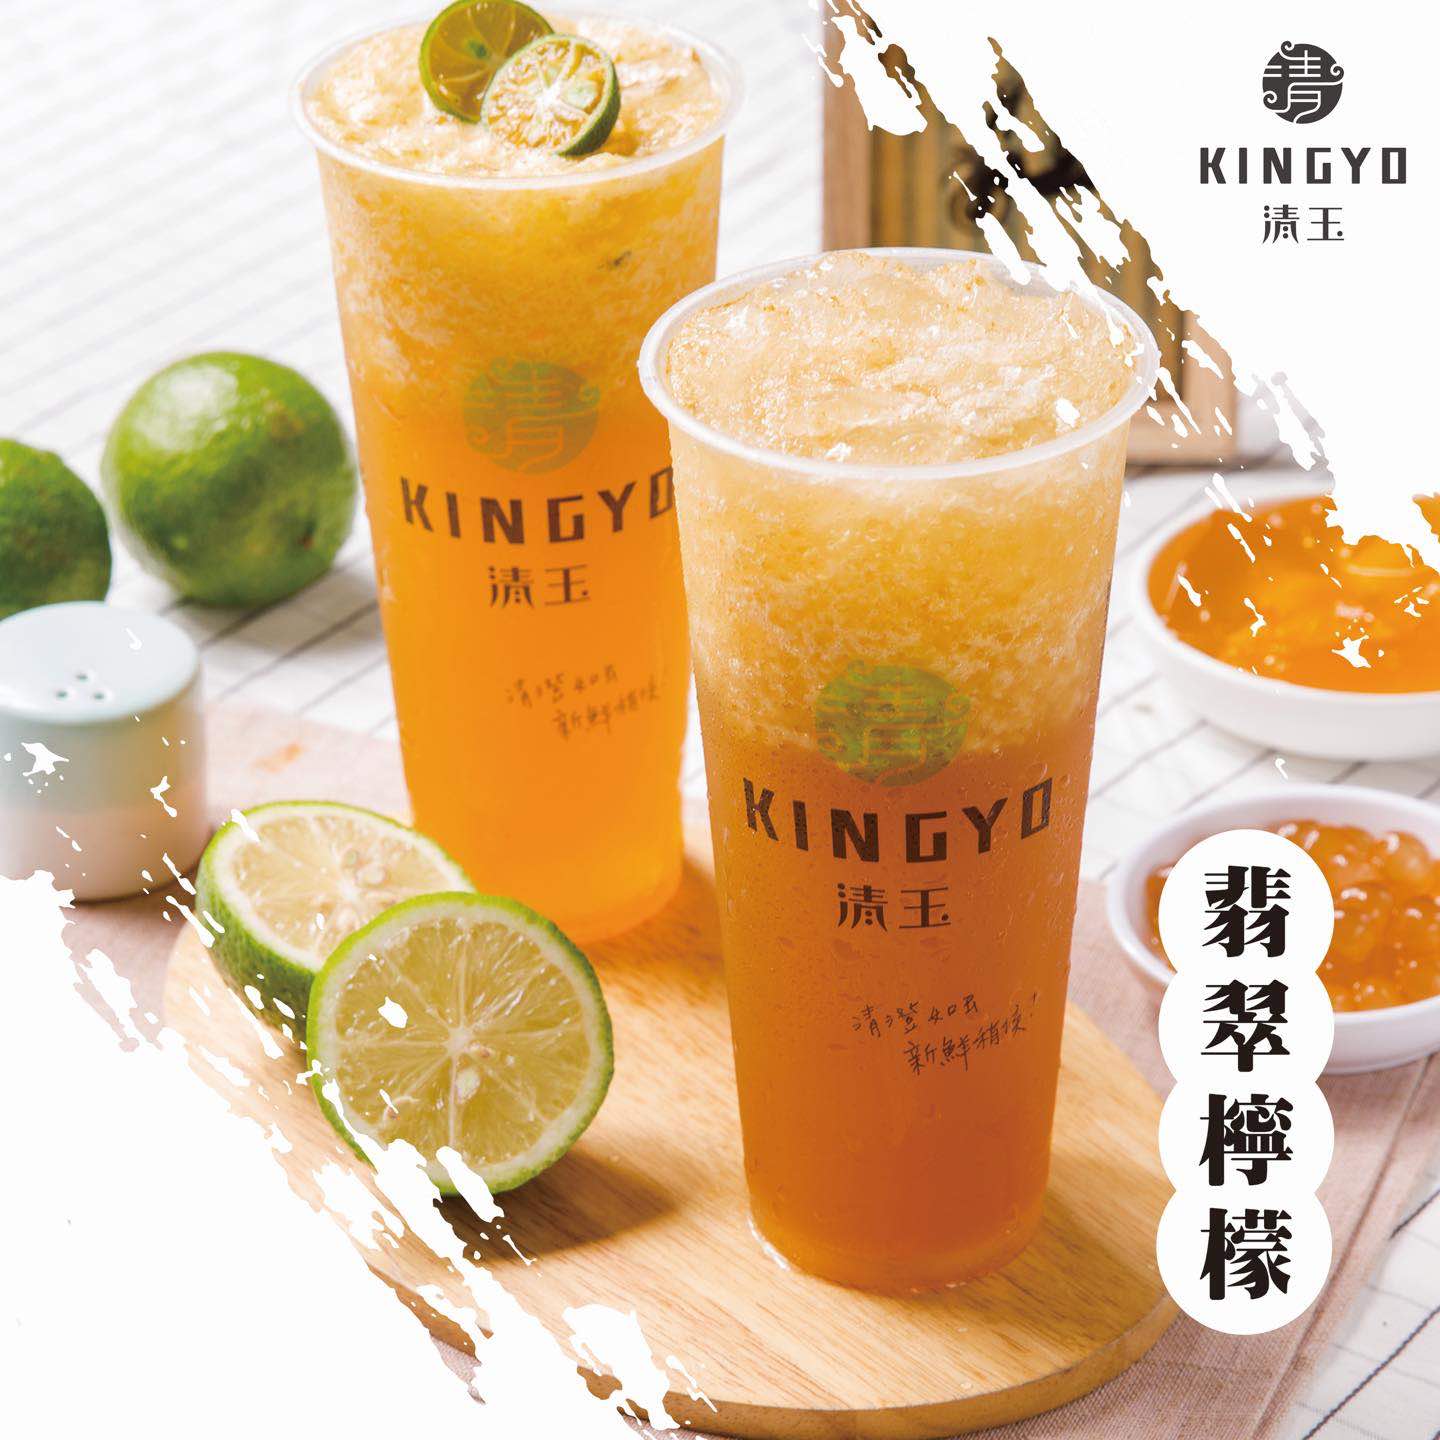 清玉好茶Kingyo的特許經營香港區加盟店項目6